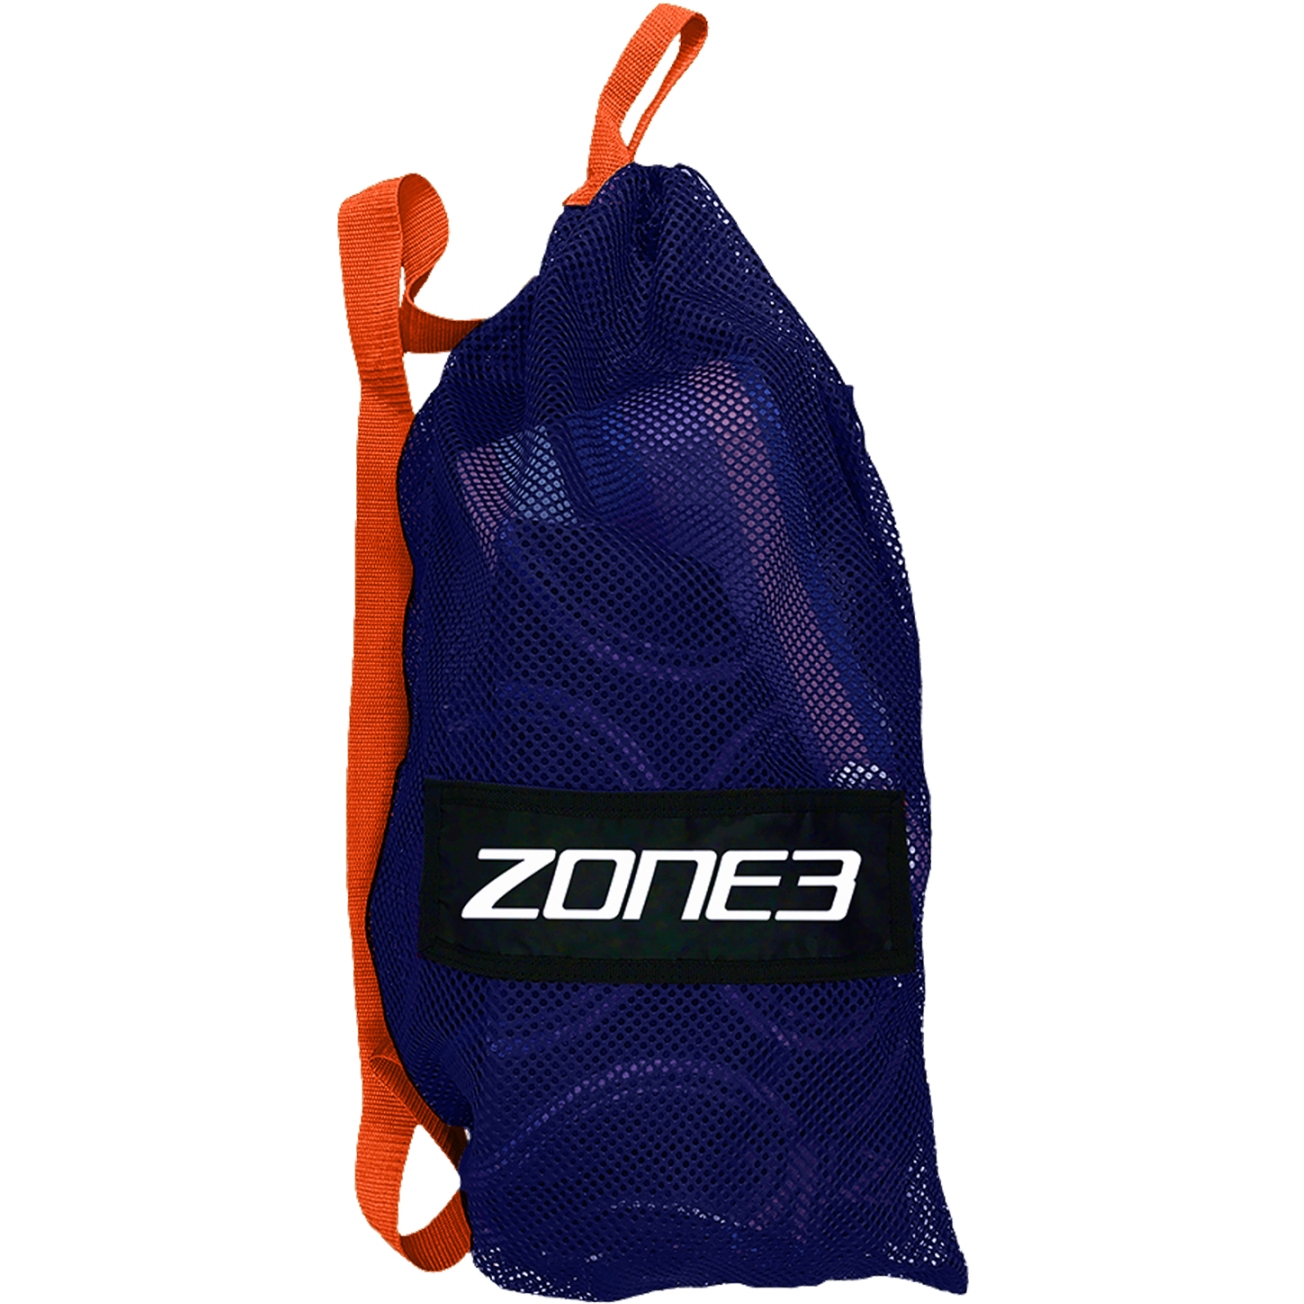 Produktbild von Zone3 Small Mesh Trainingsbeutel - blau/orange